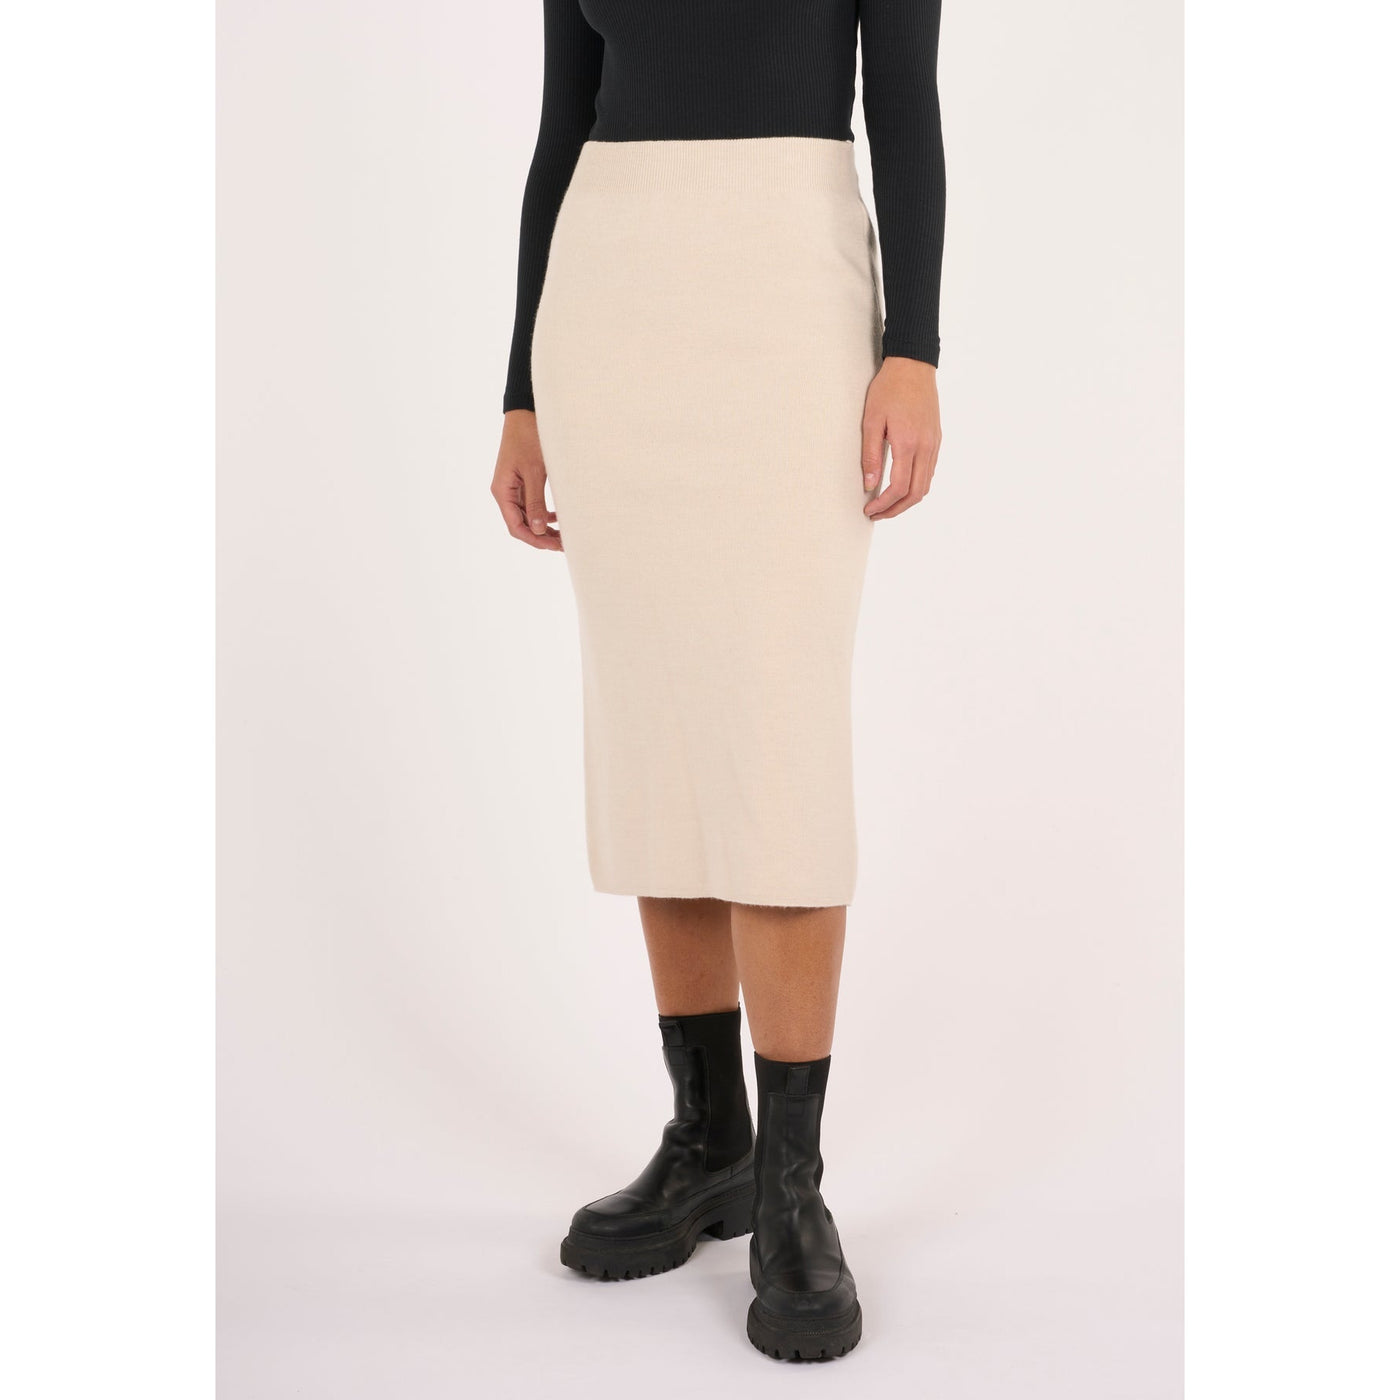 Midth length merino knit skirt